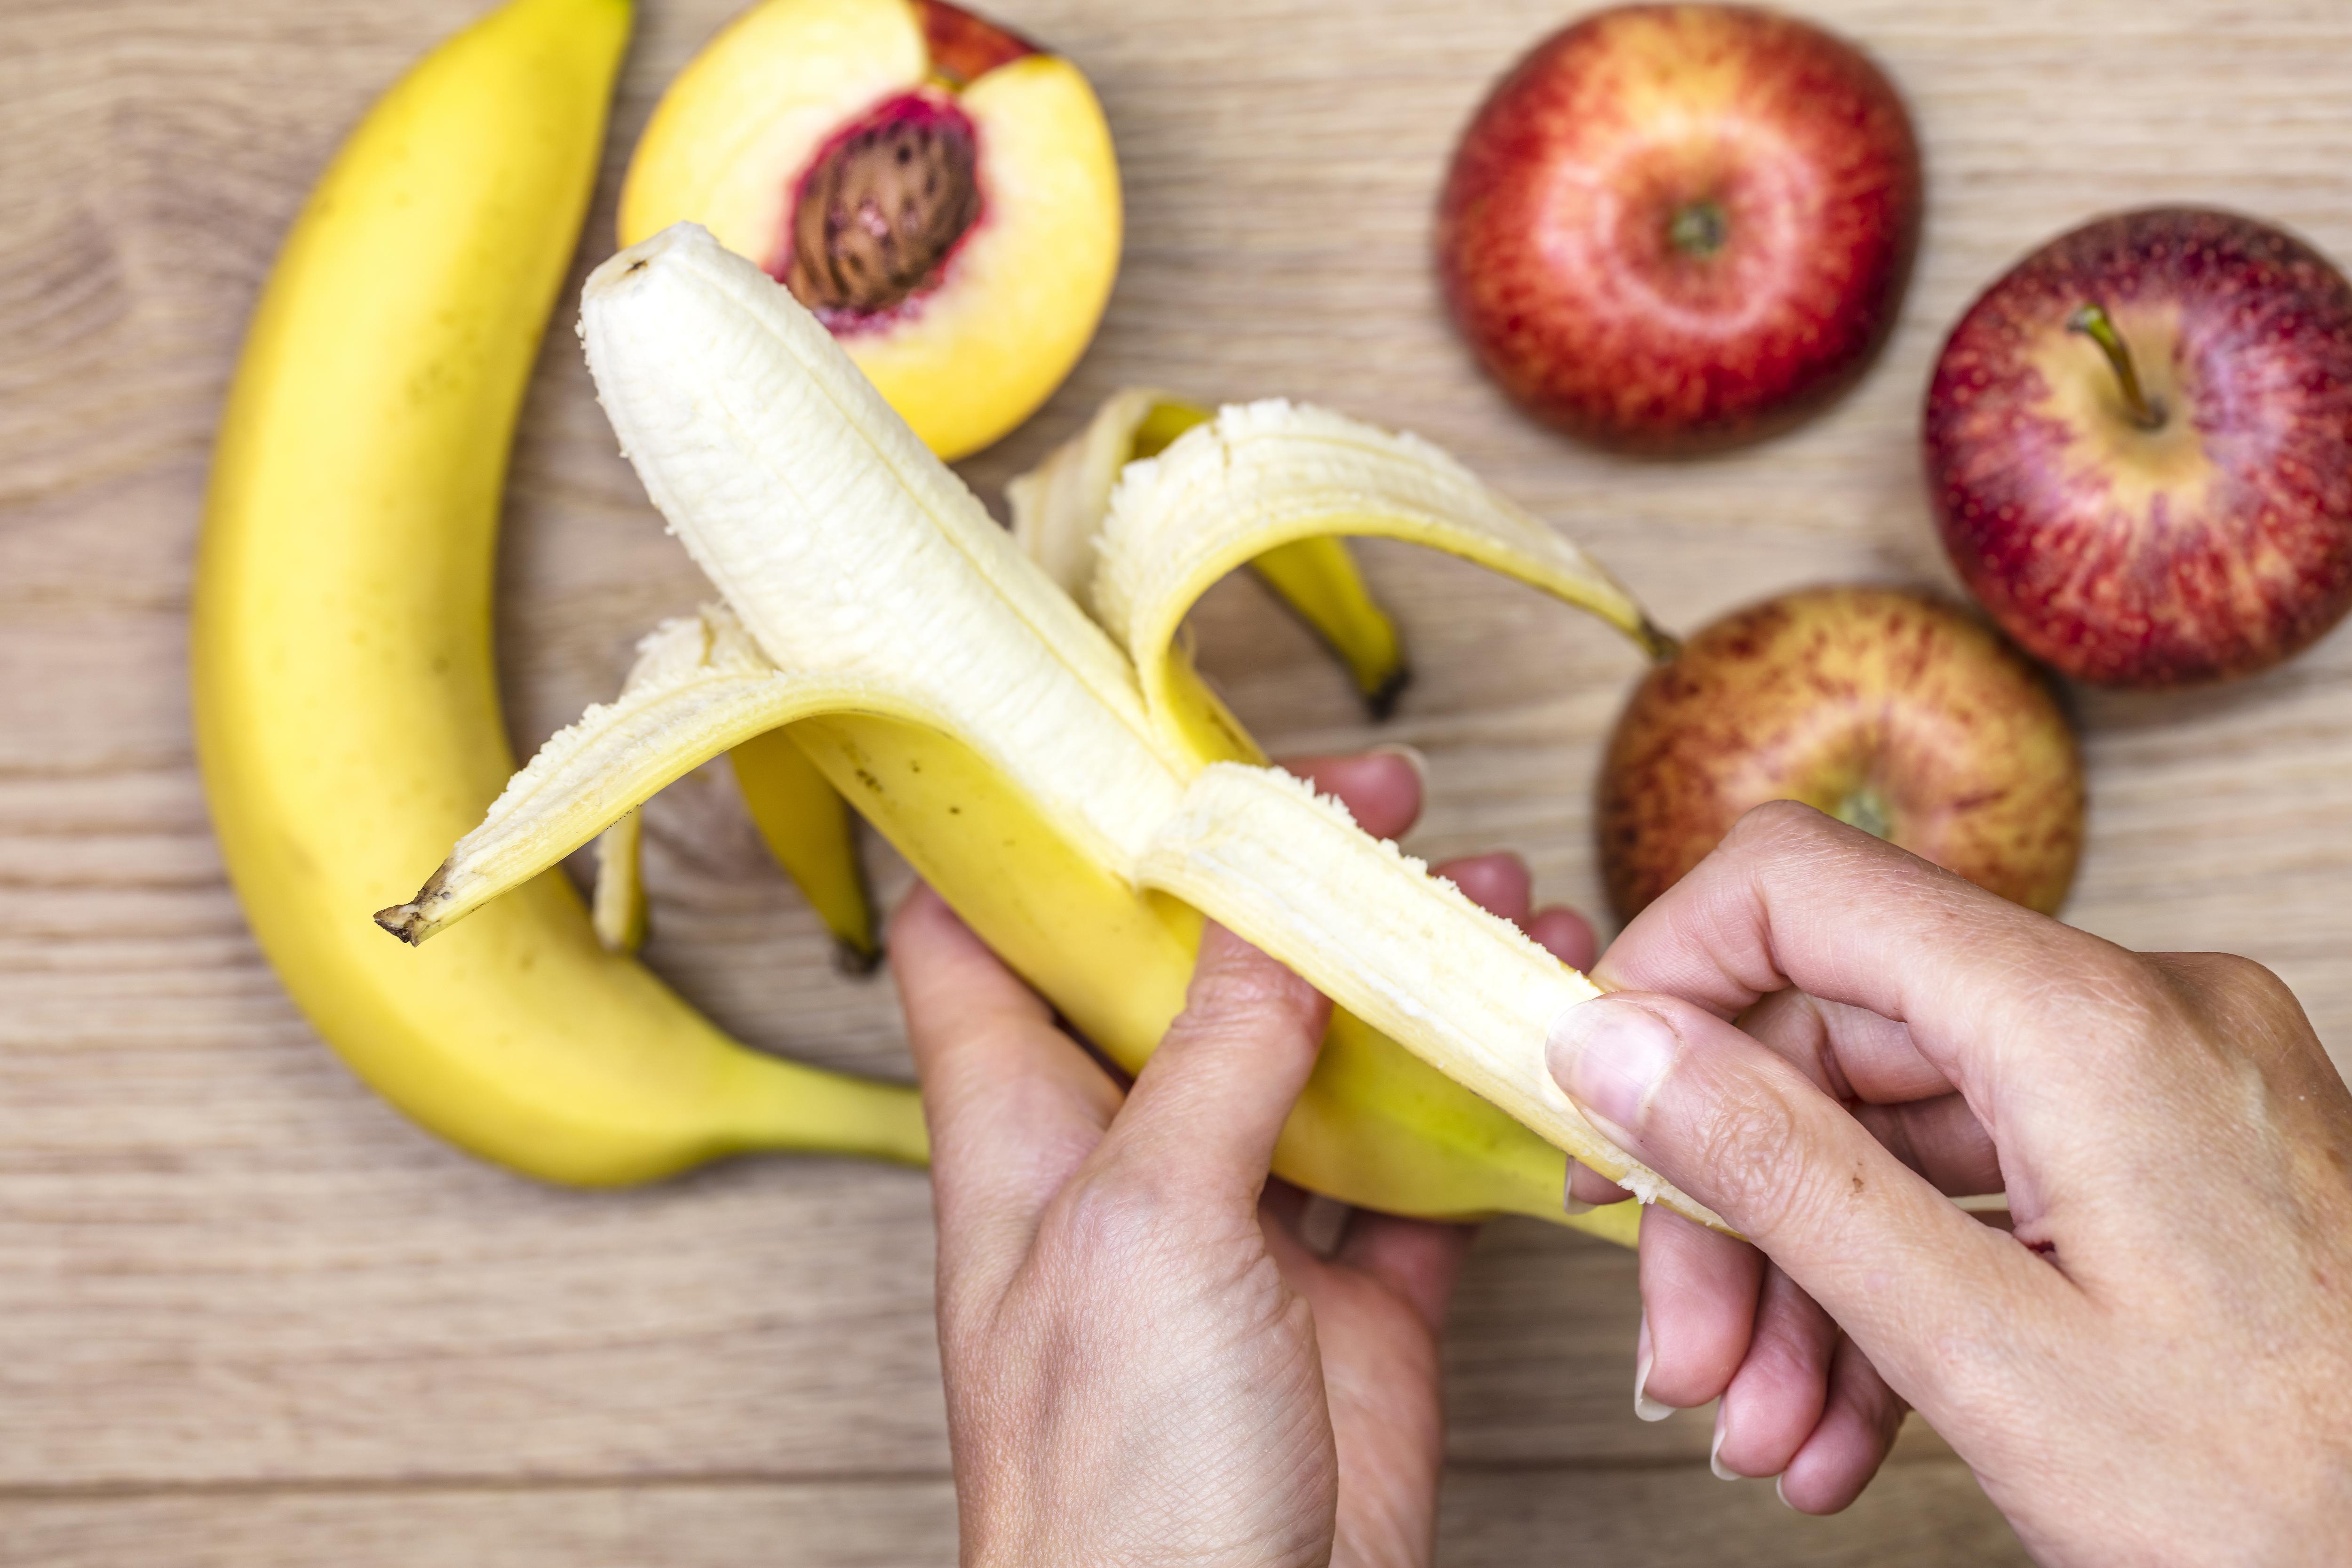 Фото №1 - Что произойдет с телом, если каждый день съедать по банану